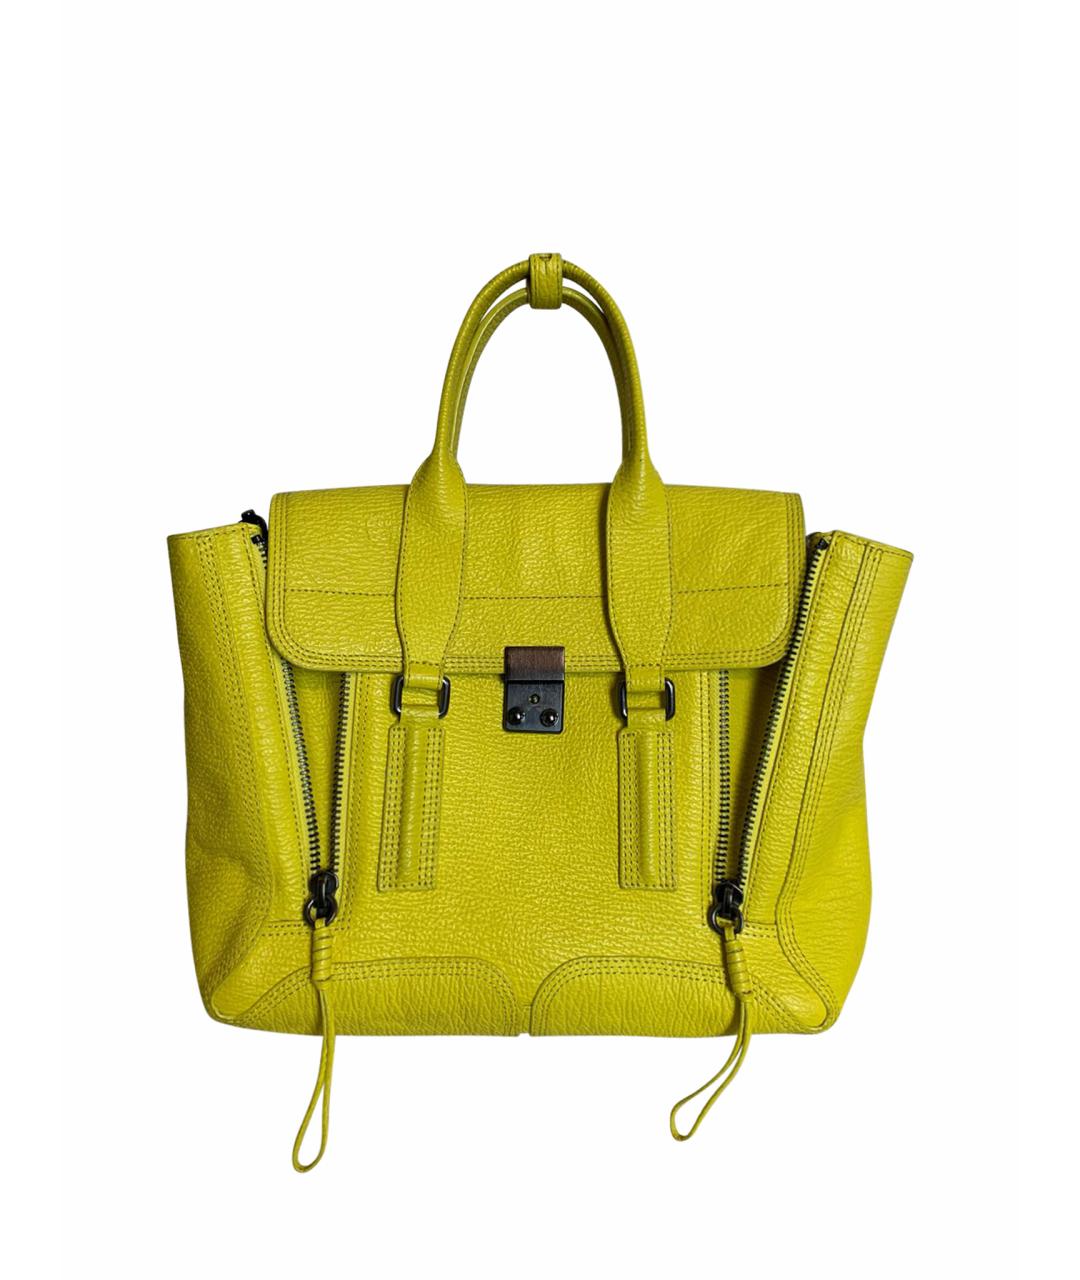 3.1 PHILLIP LIM Желтая кожаная сумка с короткими ручками, фото 1